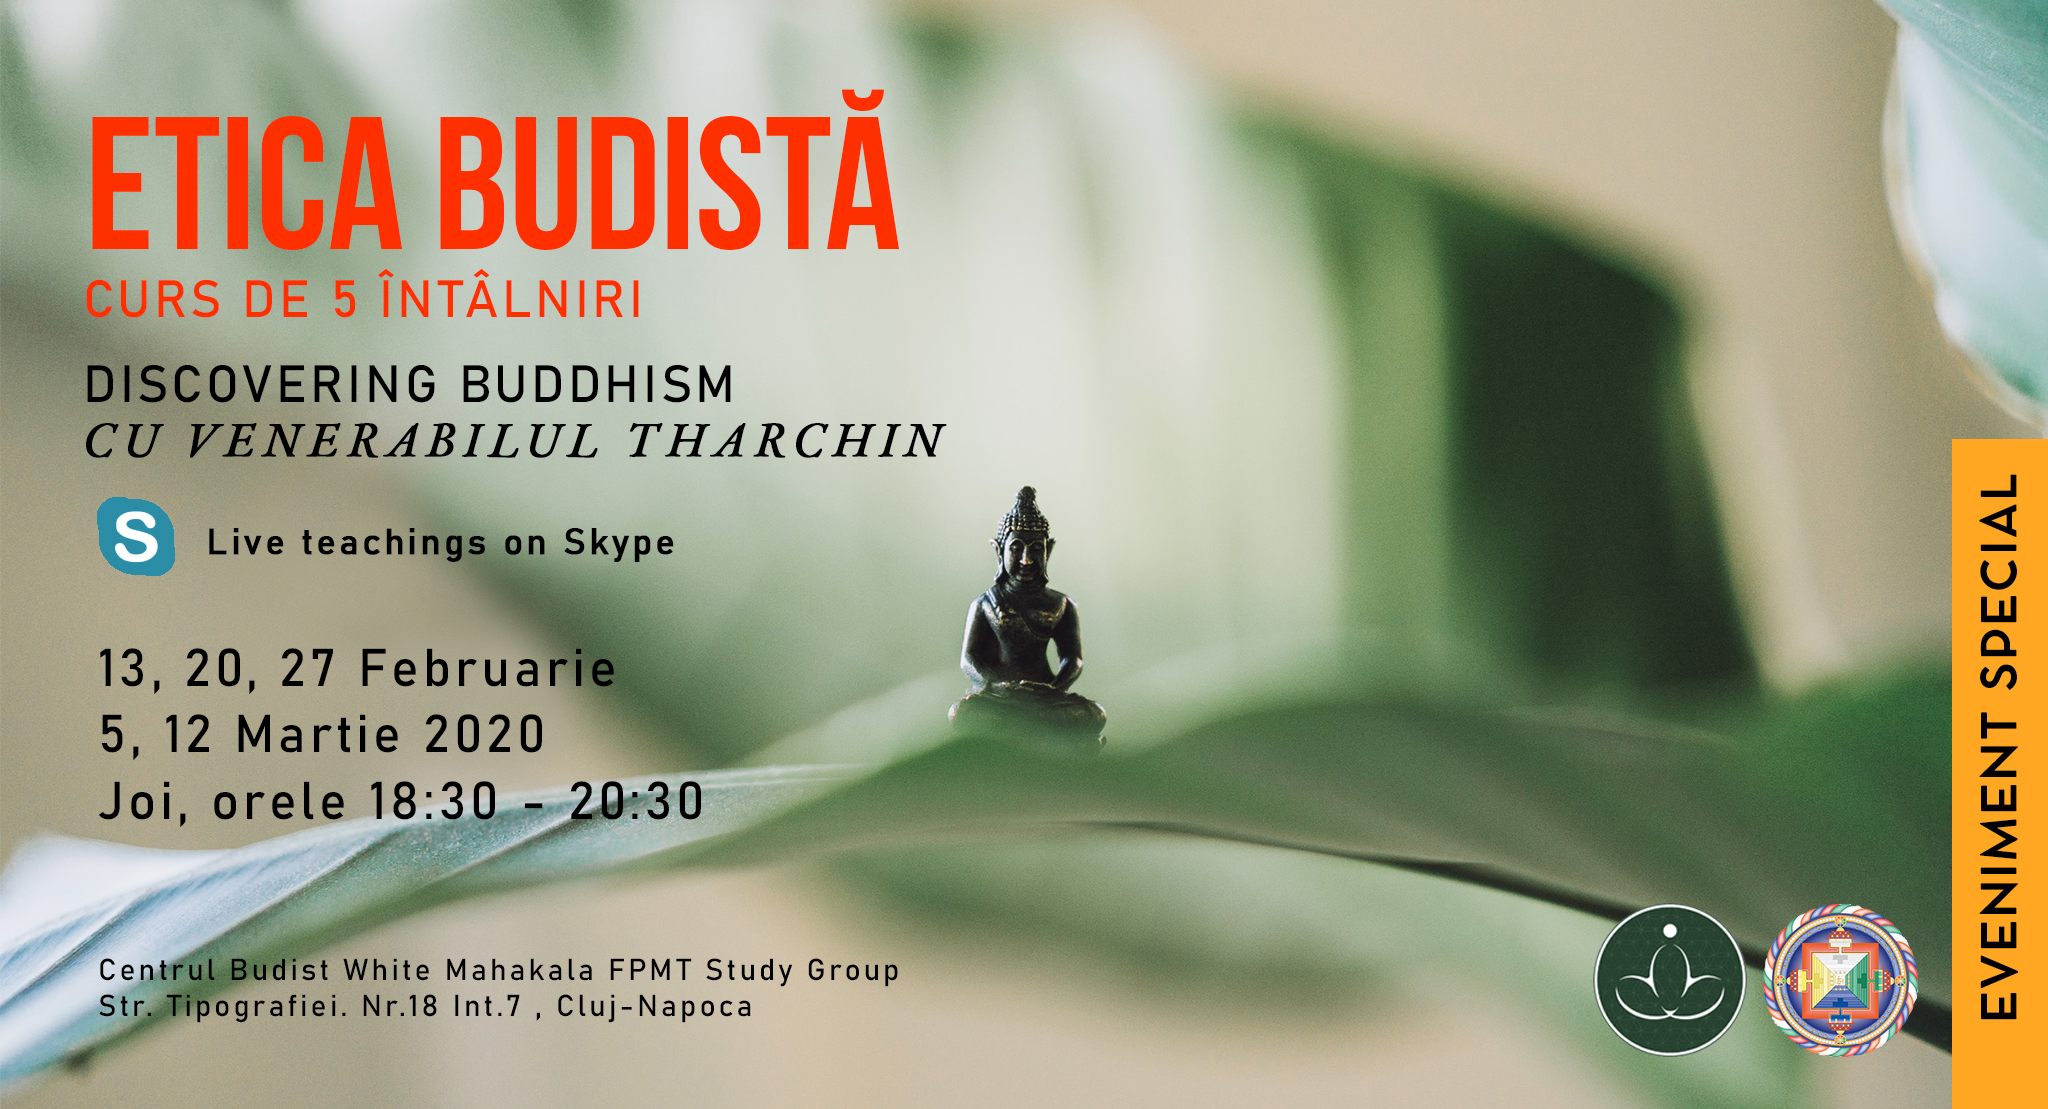 Curs Discovering Buddhism/Modulul: Etica Budista cu Venerabilul Tharchin